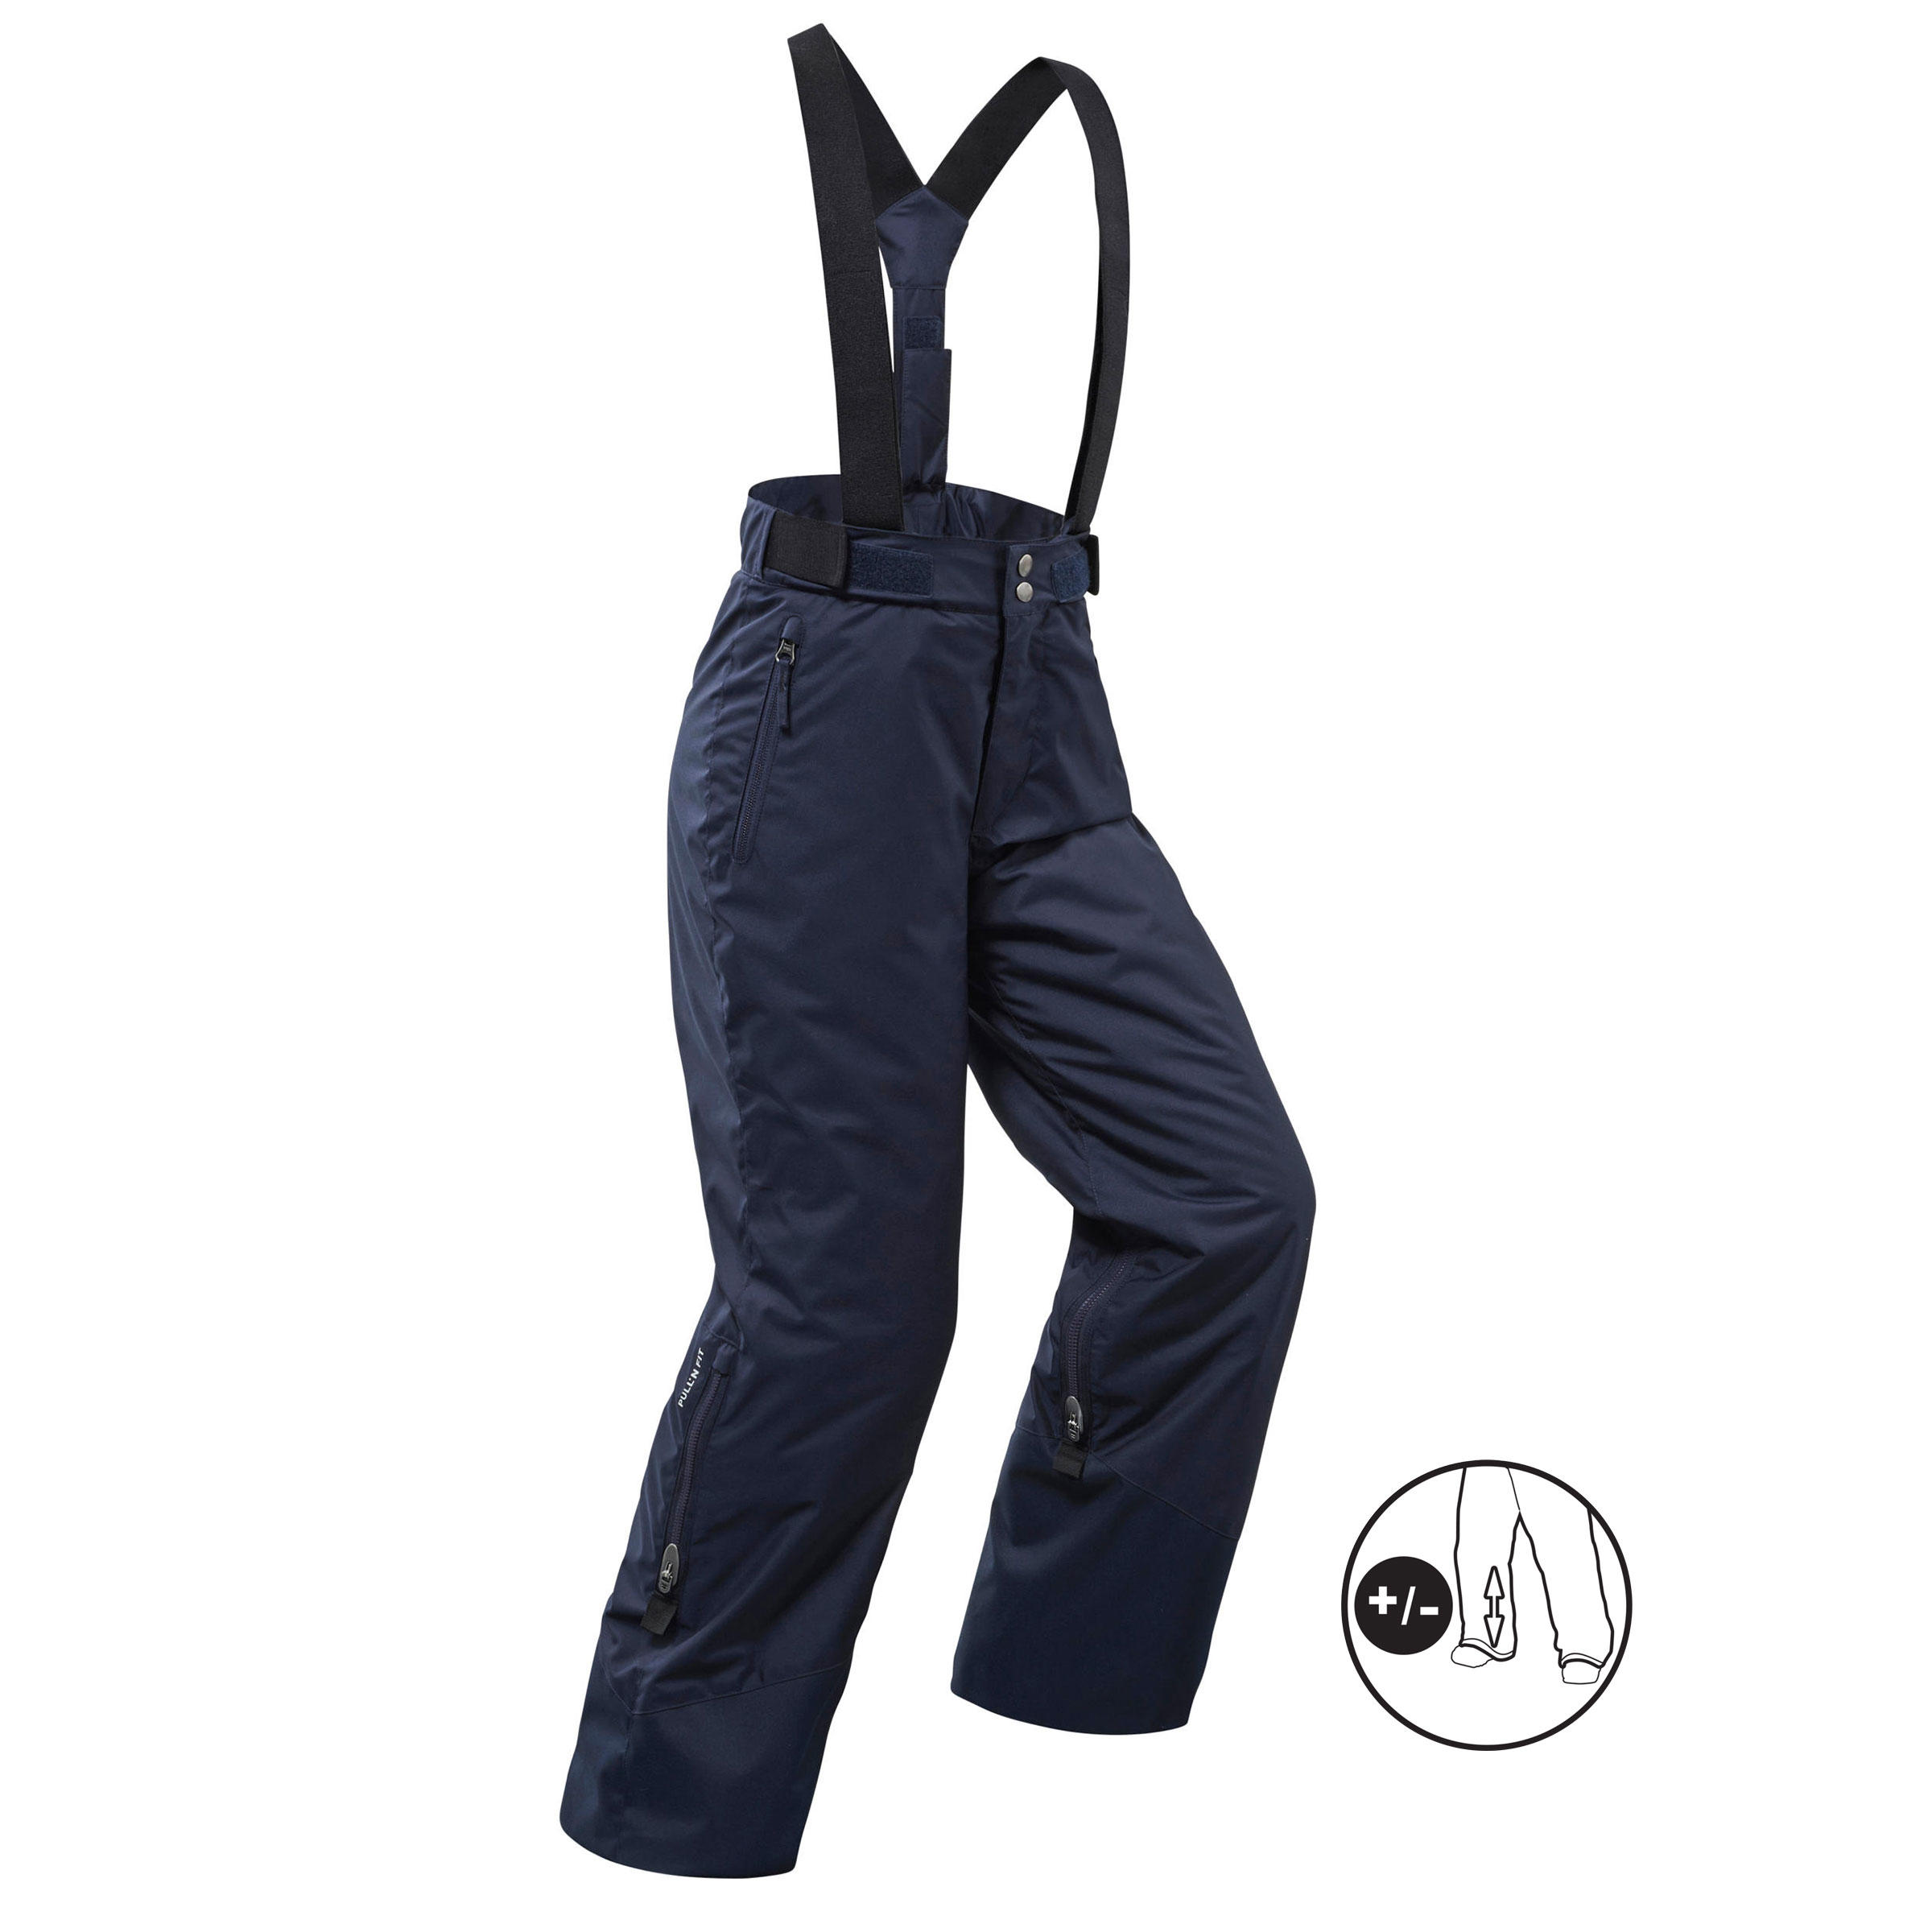 SXSHUN Combinaison de Ski/Neige Manteau et Salopettes Pantalons Epaisse Imperméable Coup Vent pour Enfant Fille Garçon 3-16 Ans 